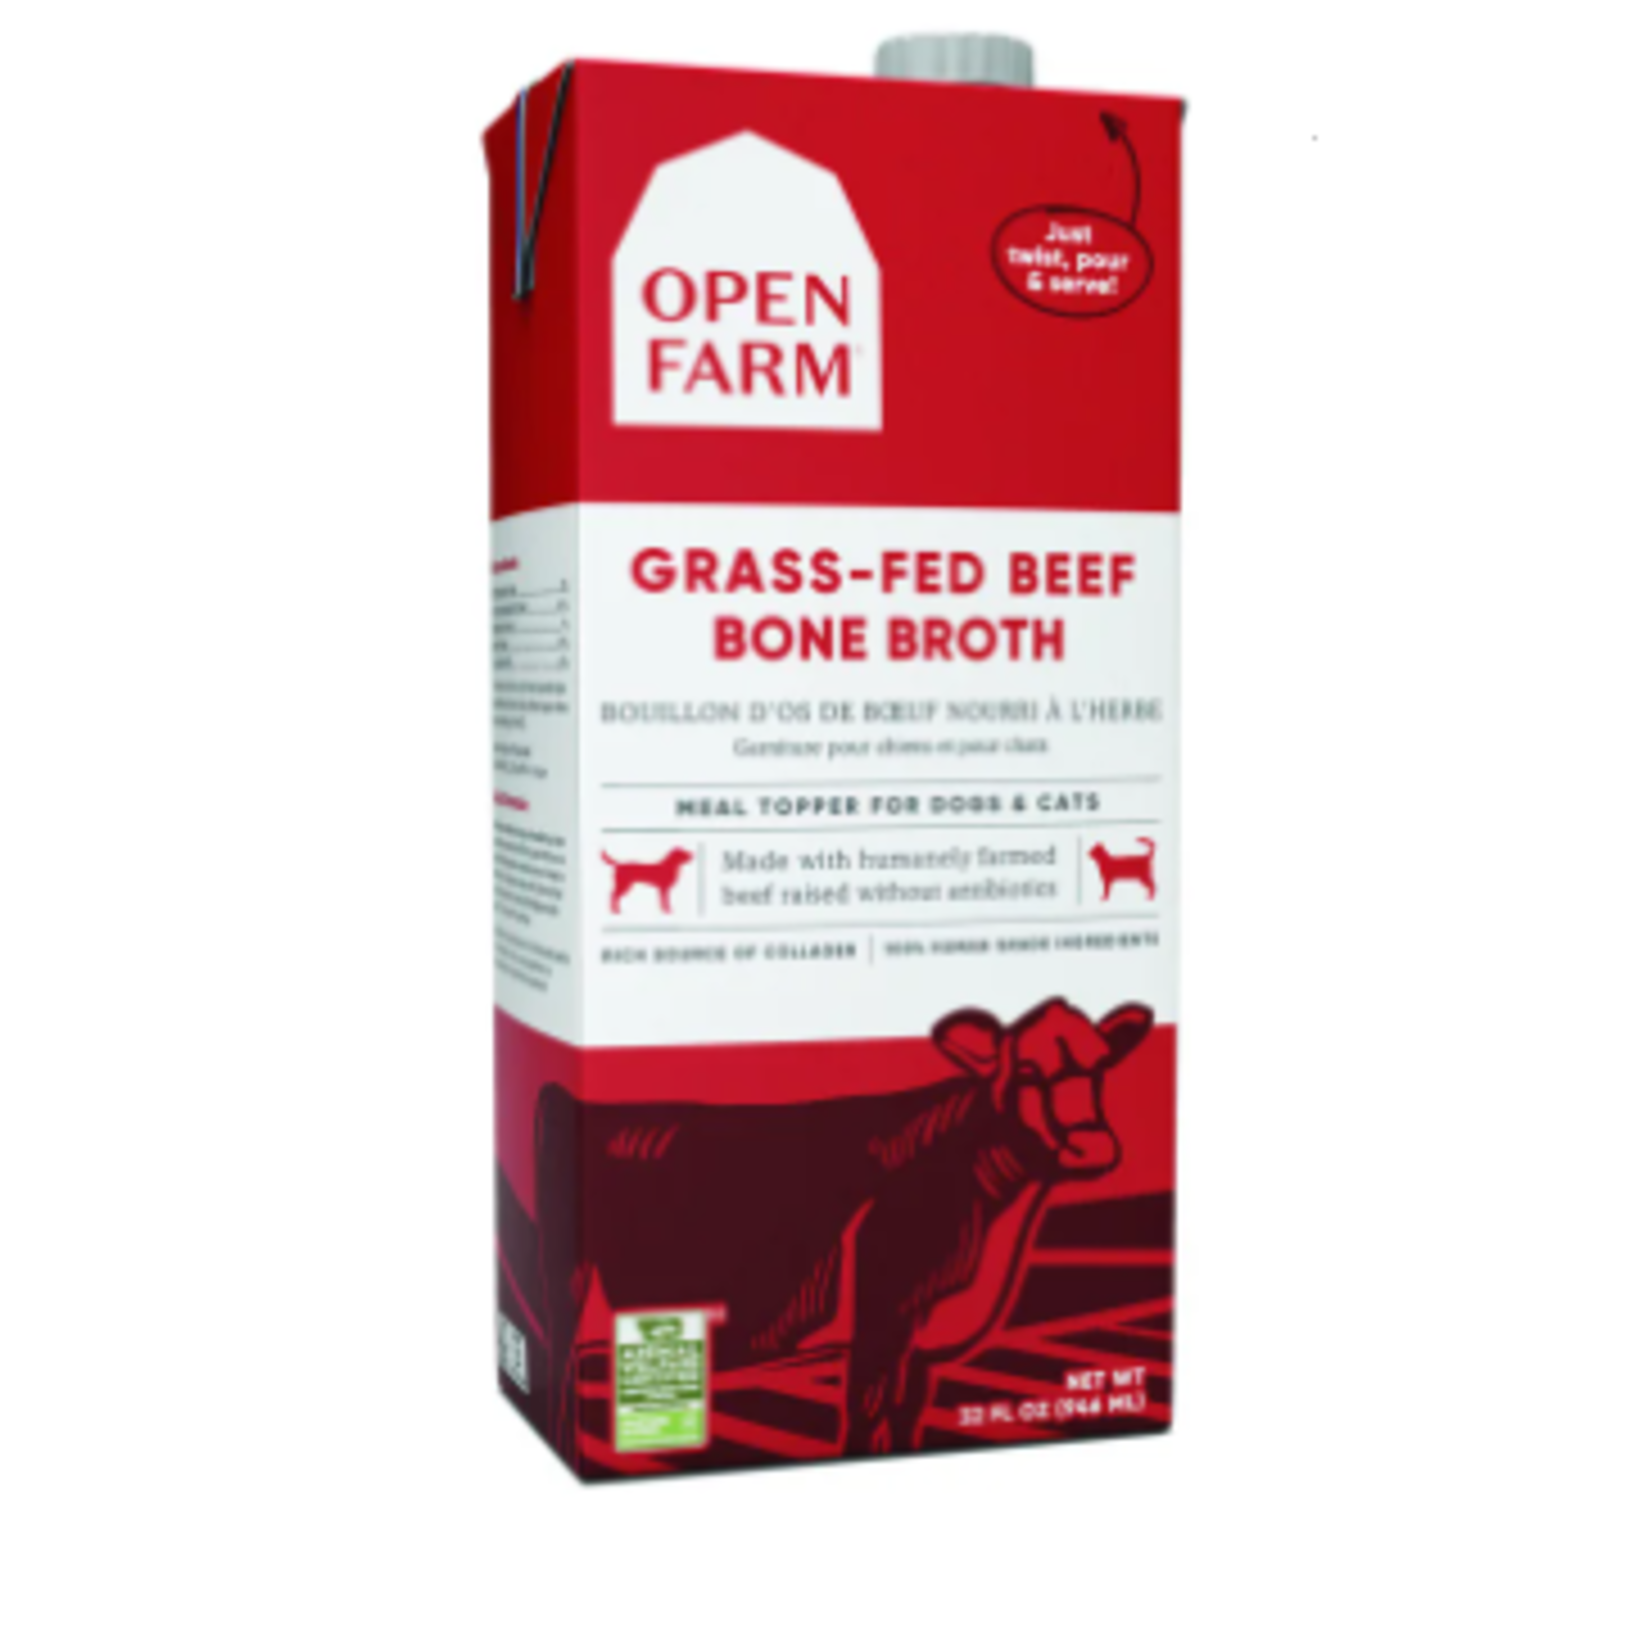 Open Farm Grass-Fed Beef Bone Broth - 32 oz